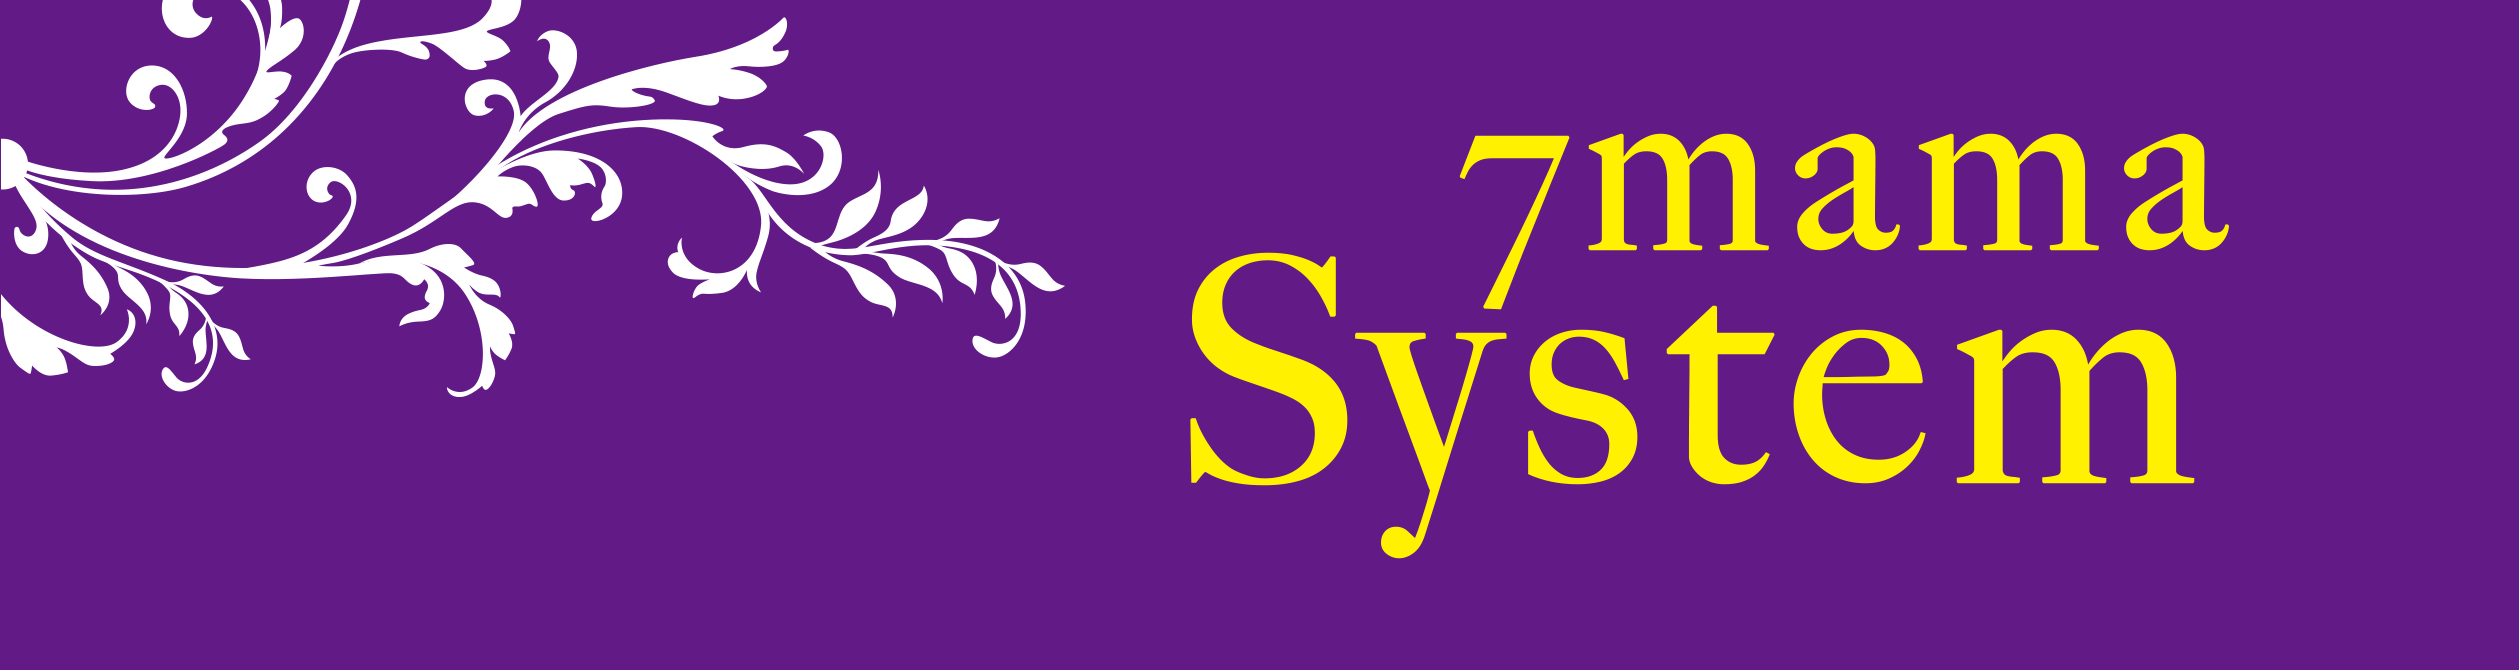 7mama System